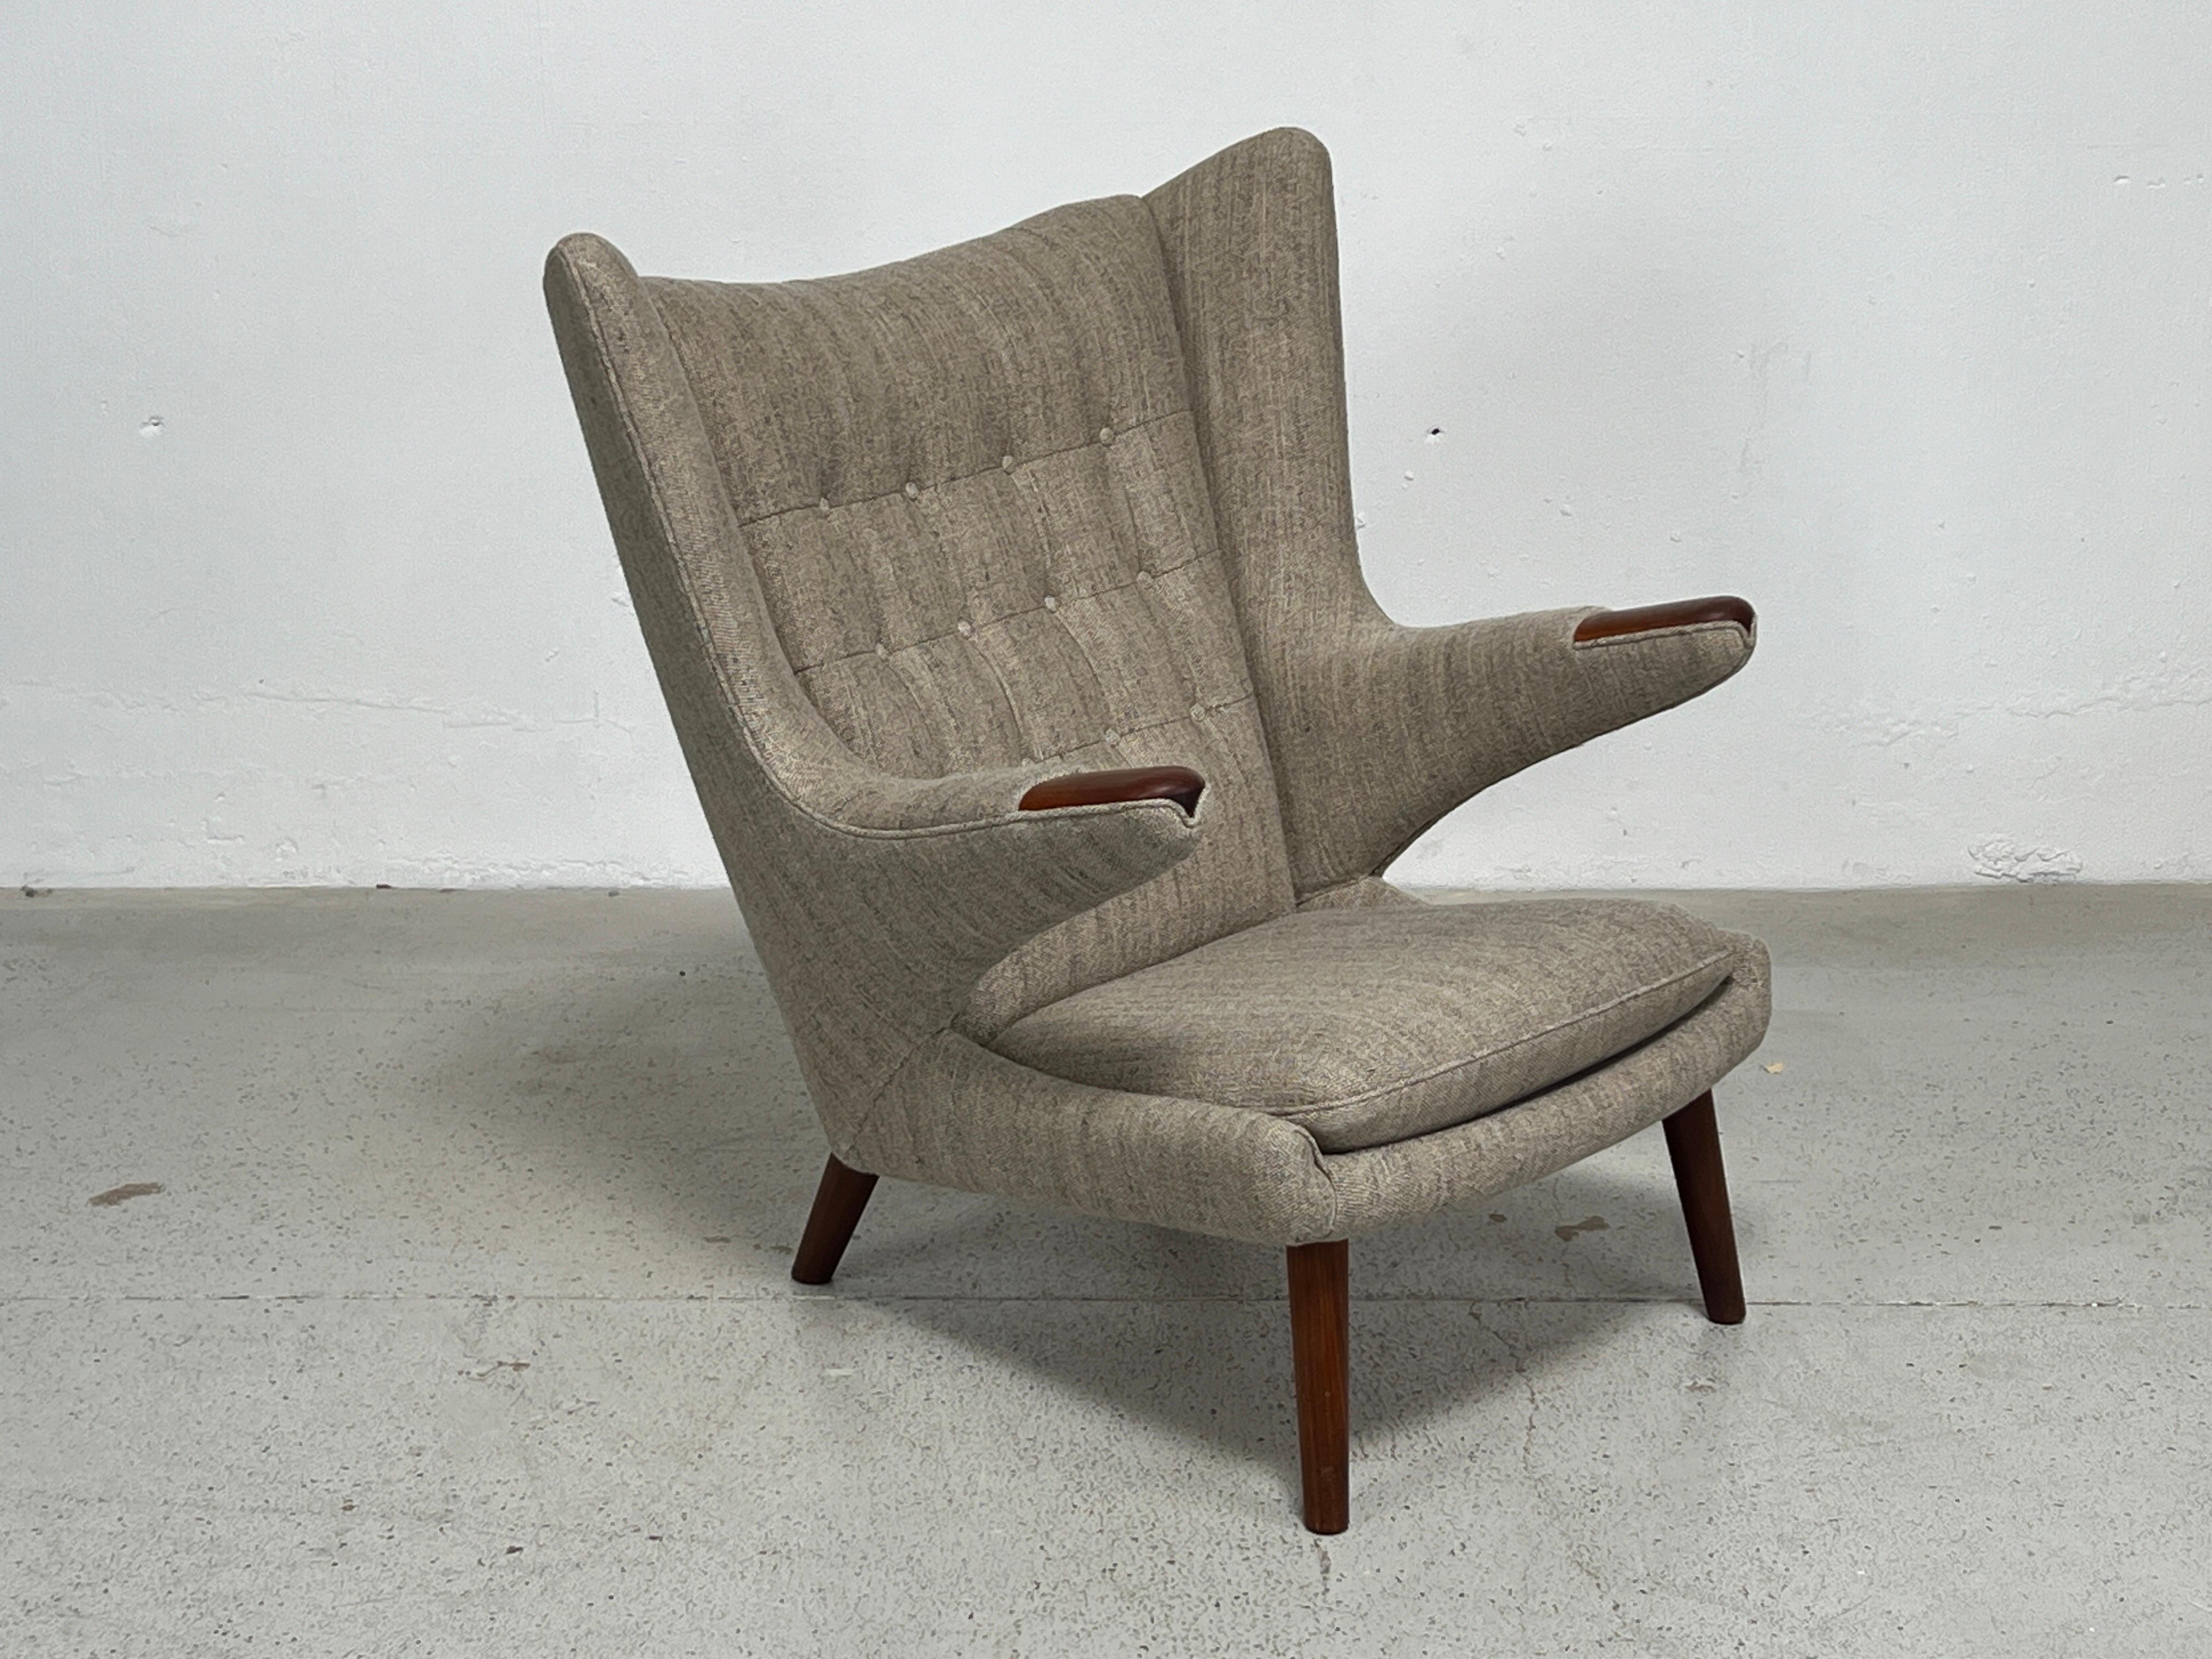 Ein wunderschön restaurierter Papa-Bär-Stuhl, entworfen von Hans Wegner für A.P. Gestohlen. Gepolstert in Larsen / Sedona / Seeglas

